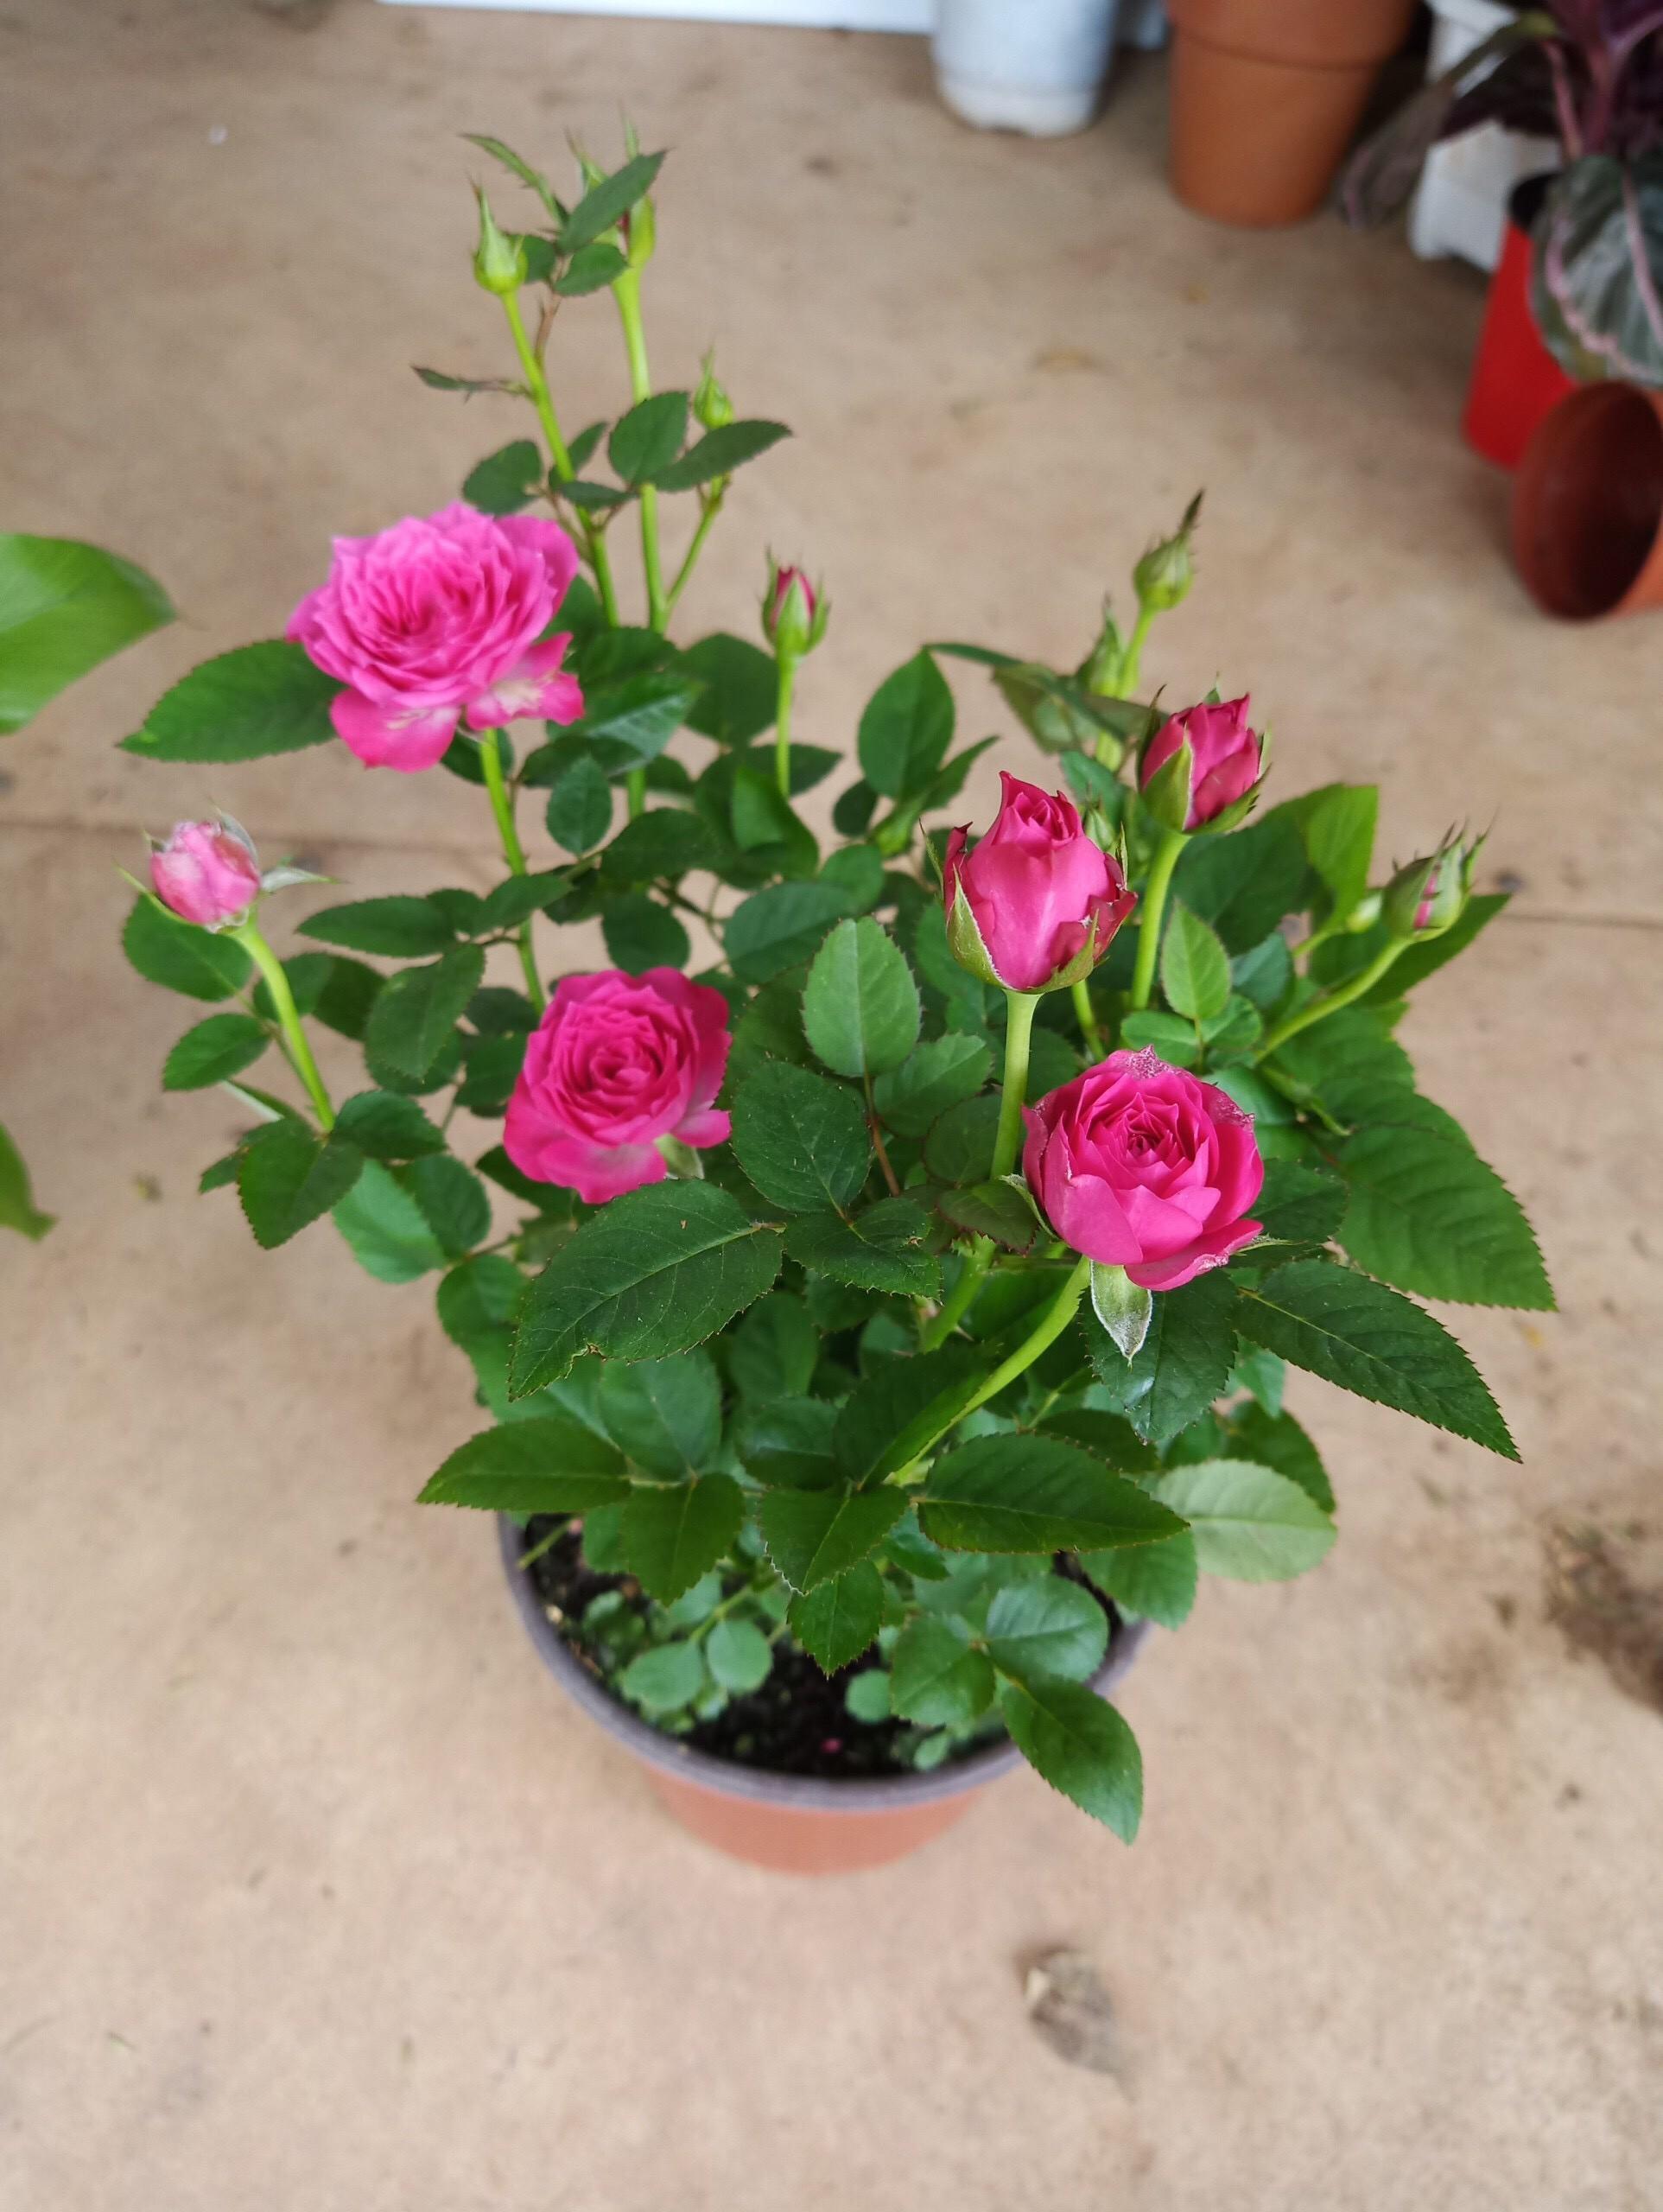 Cây hoa hồng siêu nụ nguyên bản - Ra hoa quanh năm cây đẹp chuẩn giống